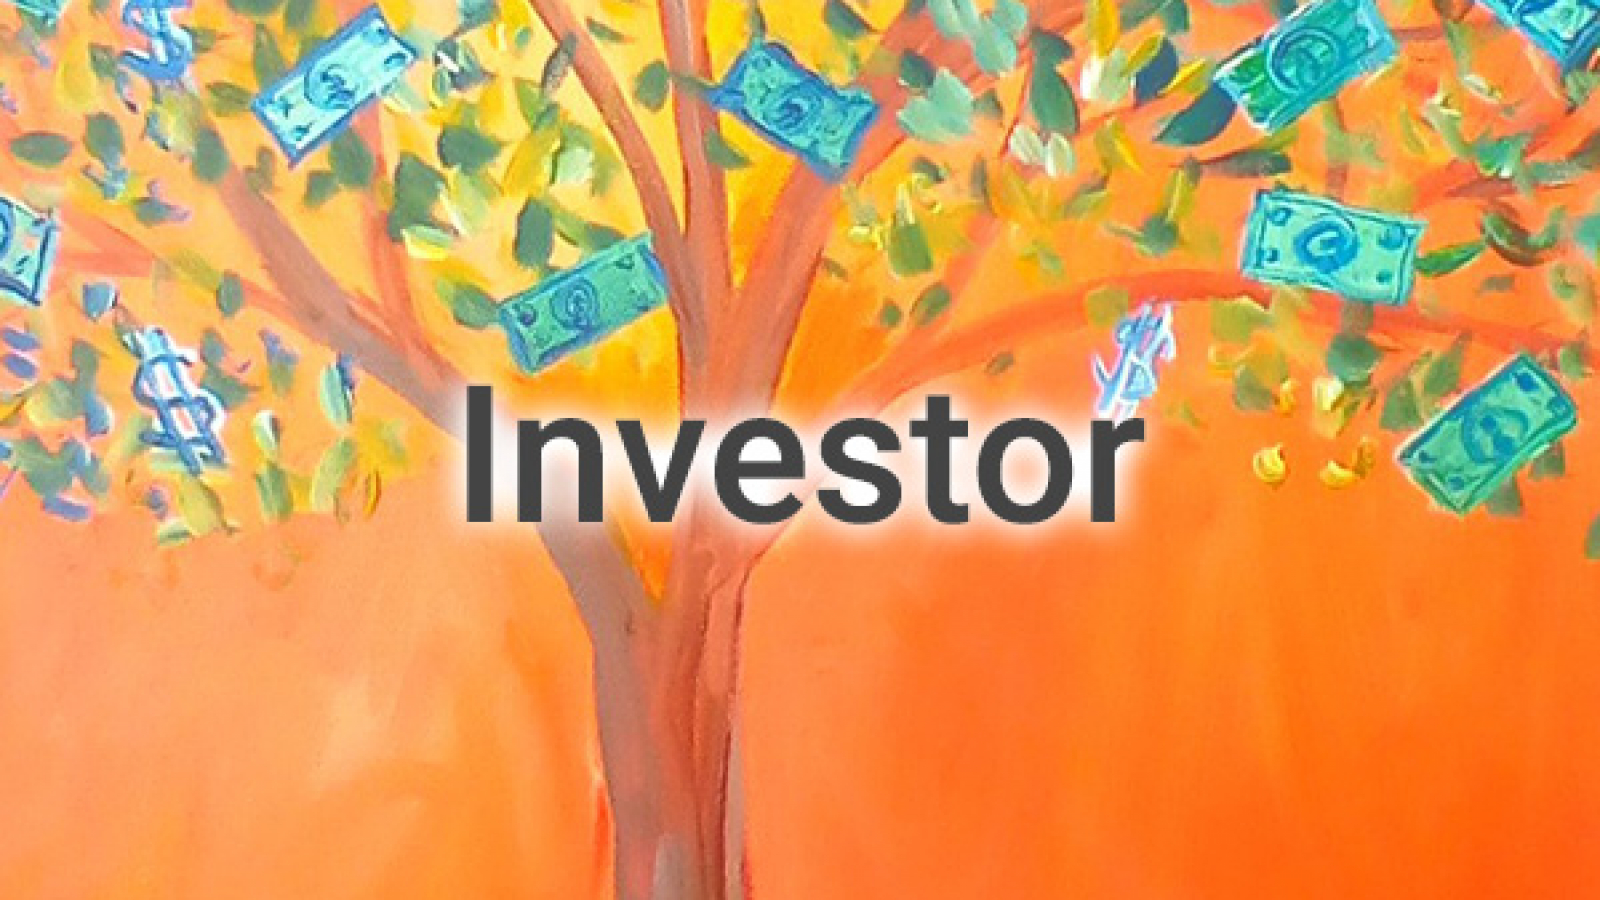 InvestorL